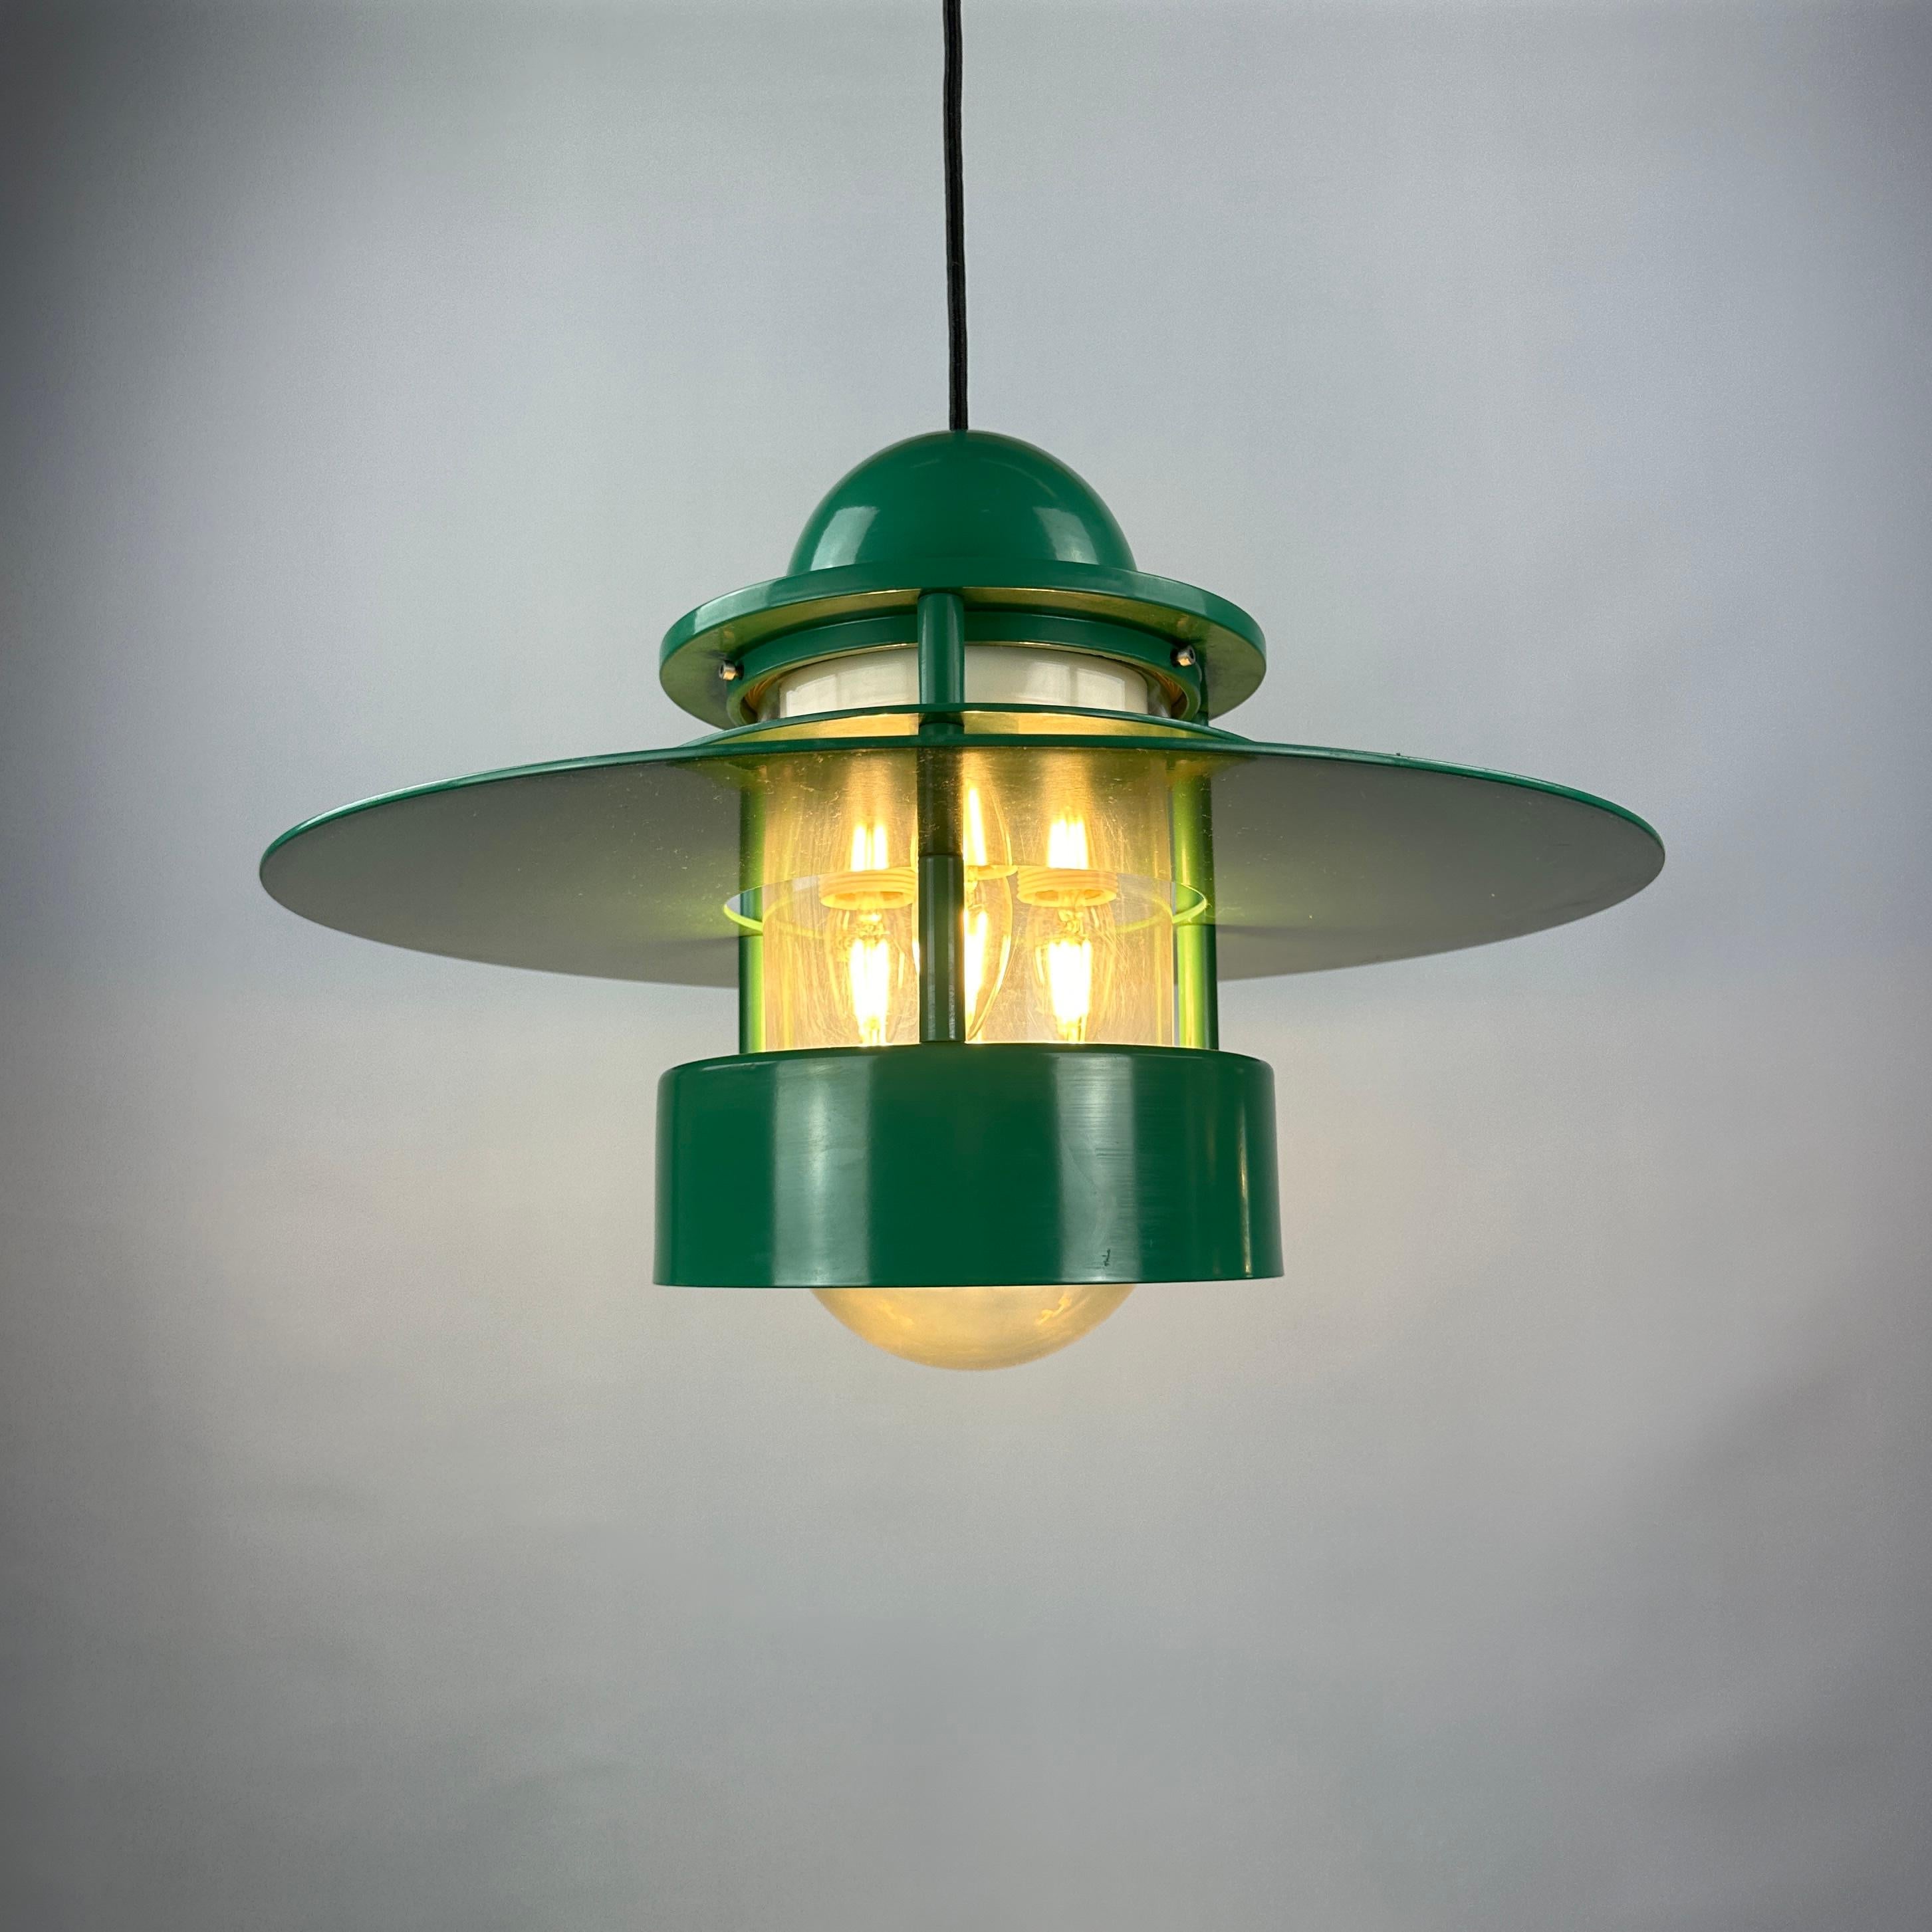 Cette grande lampe suspendue en forme d'OVNI a été conçue par Jens Møller Jensen pour Louis Poulsen en 1963. Ce modèle s'appelle Orbiter et est le plus grand modèle de cette série. Cet abat-jour rond est fabriqué en métal émaillé vert et comporte un